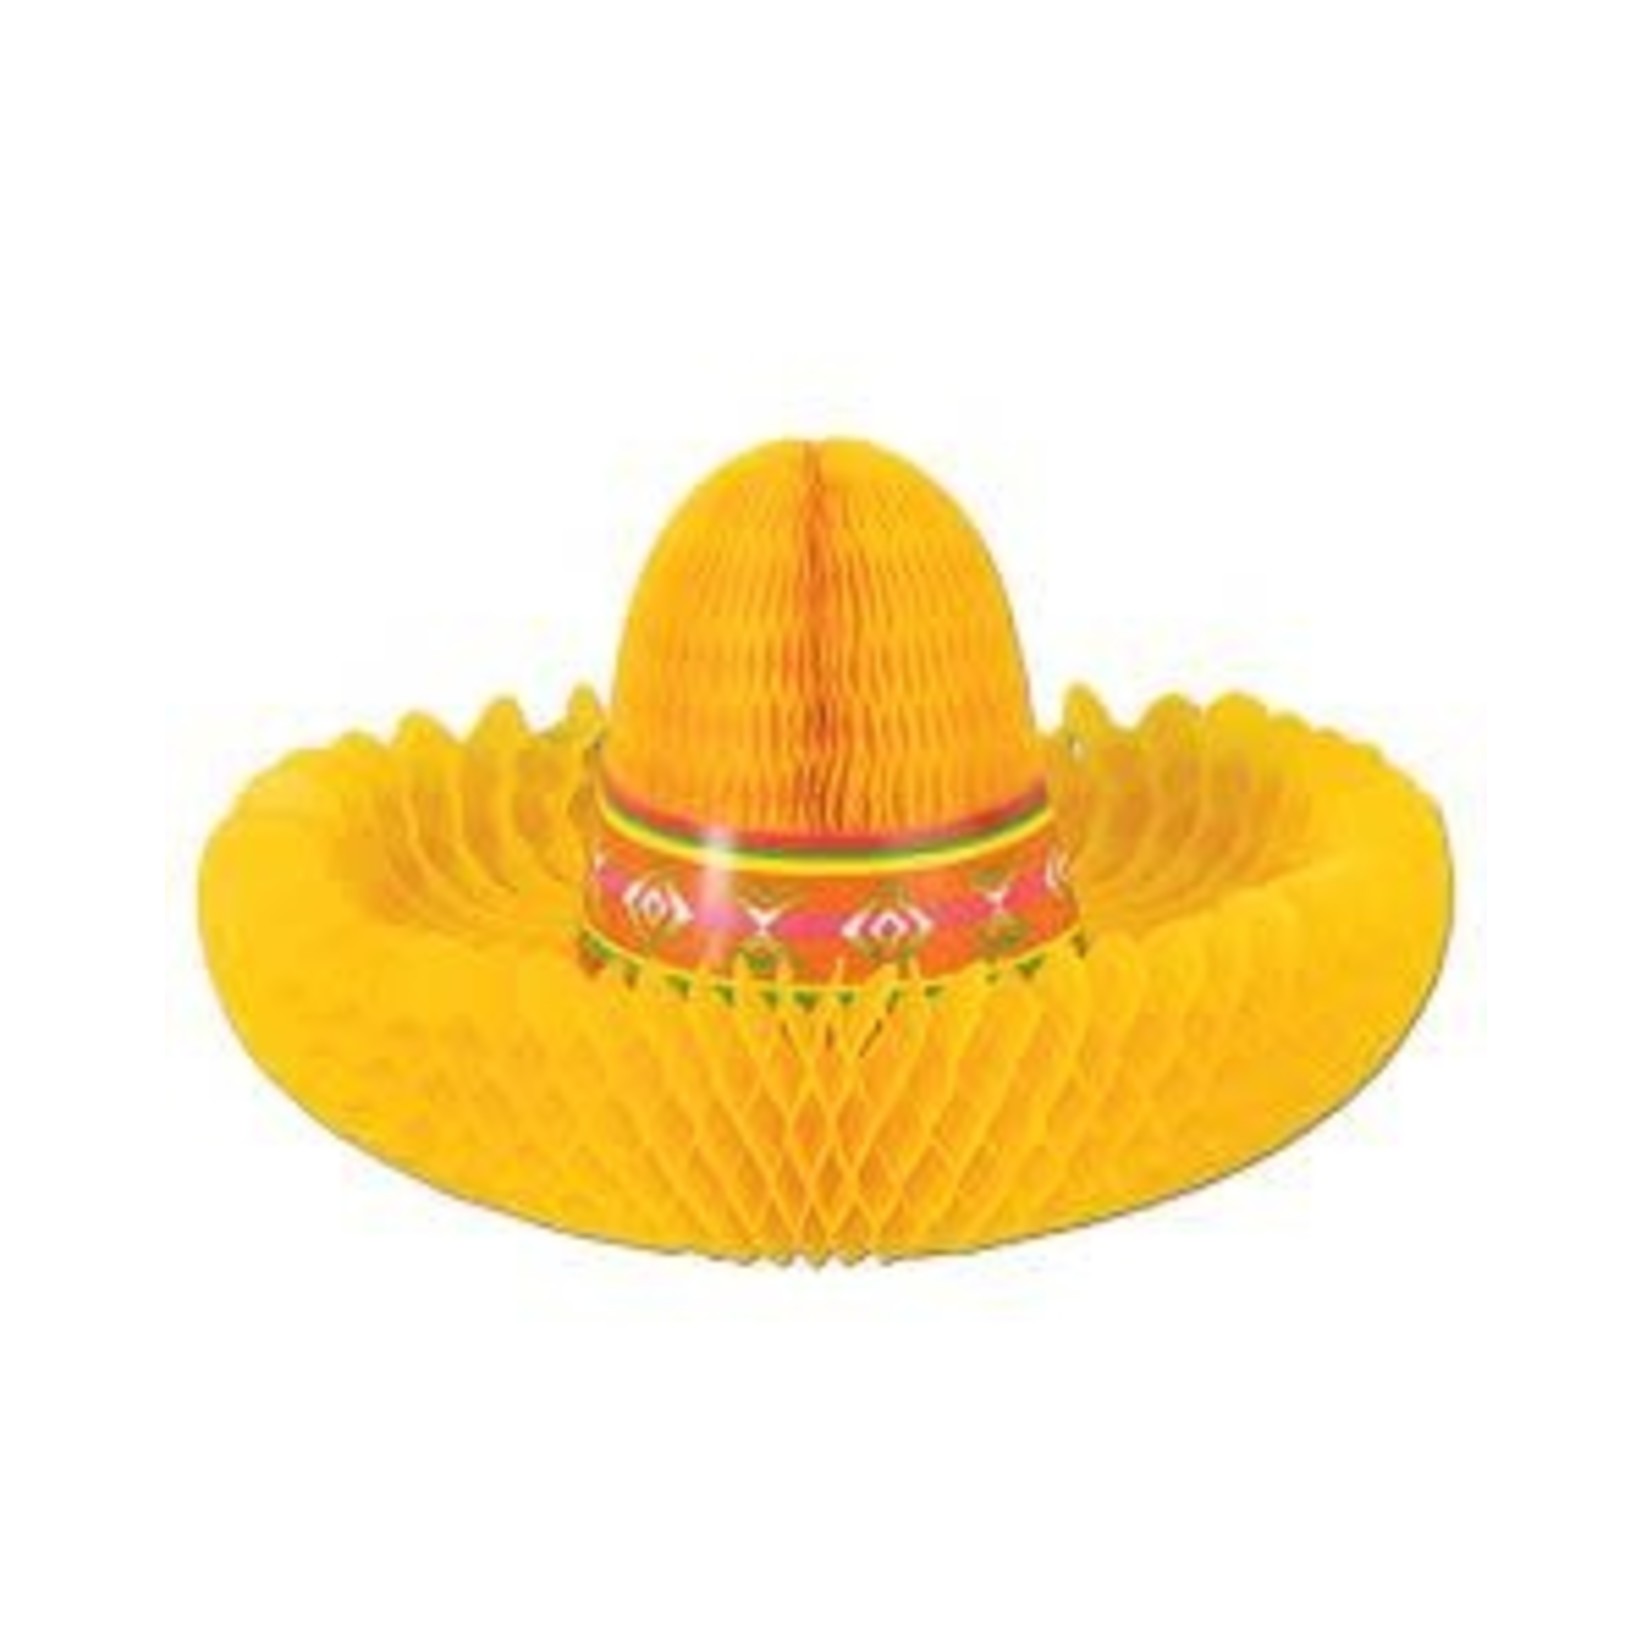 Beistle 12" Fiesta Sombrero Centerpiece - 1ct.